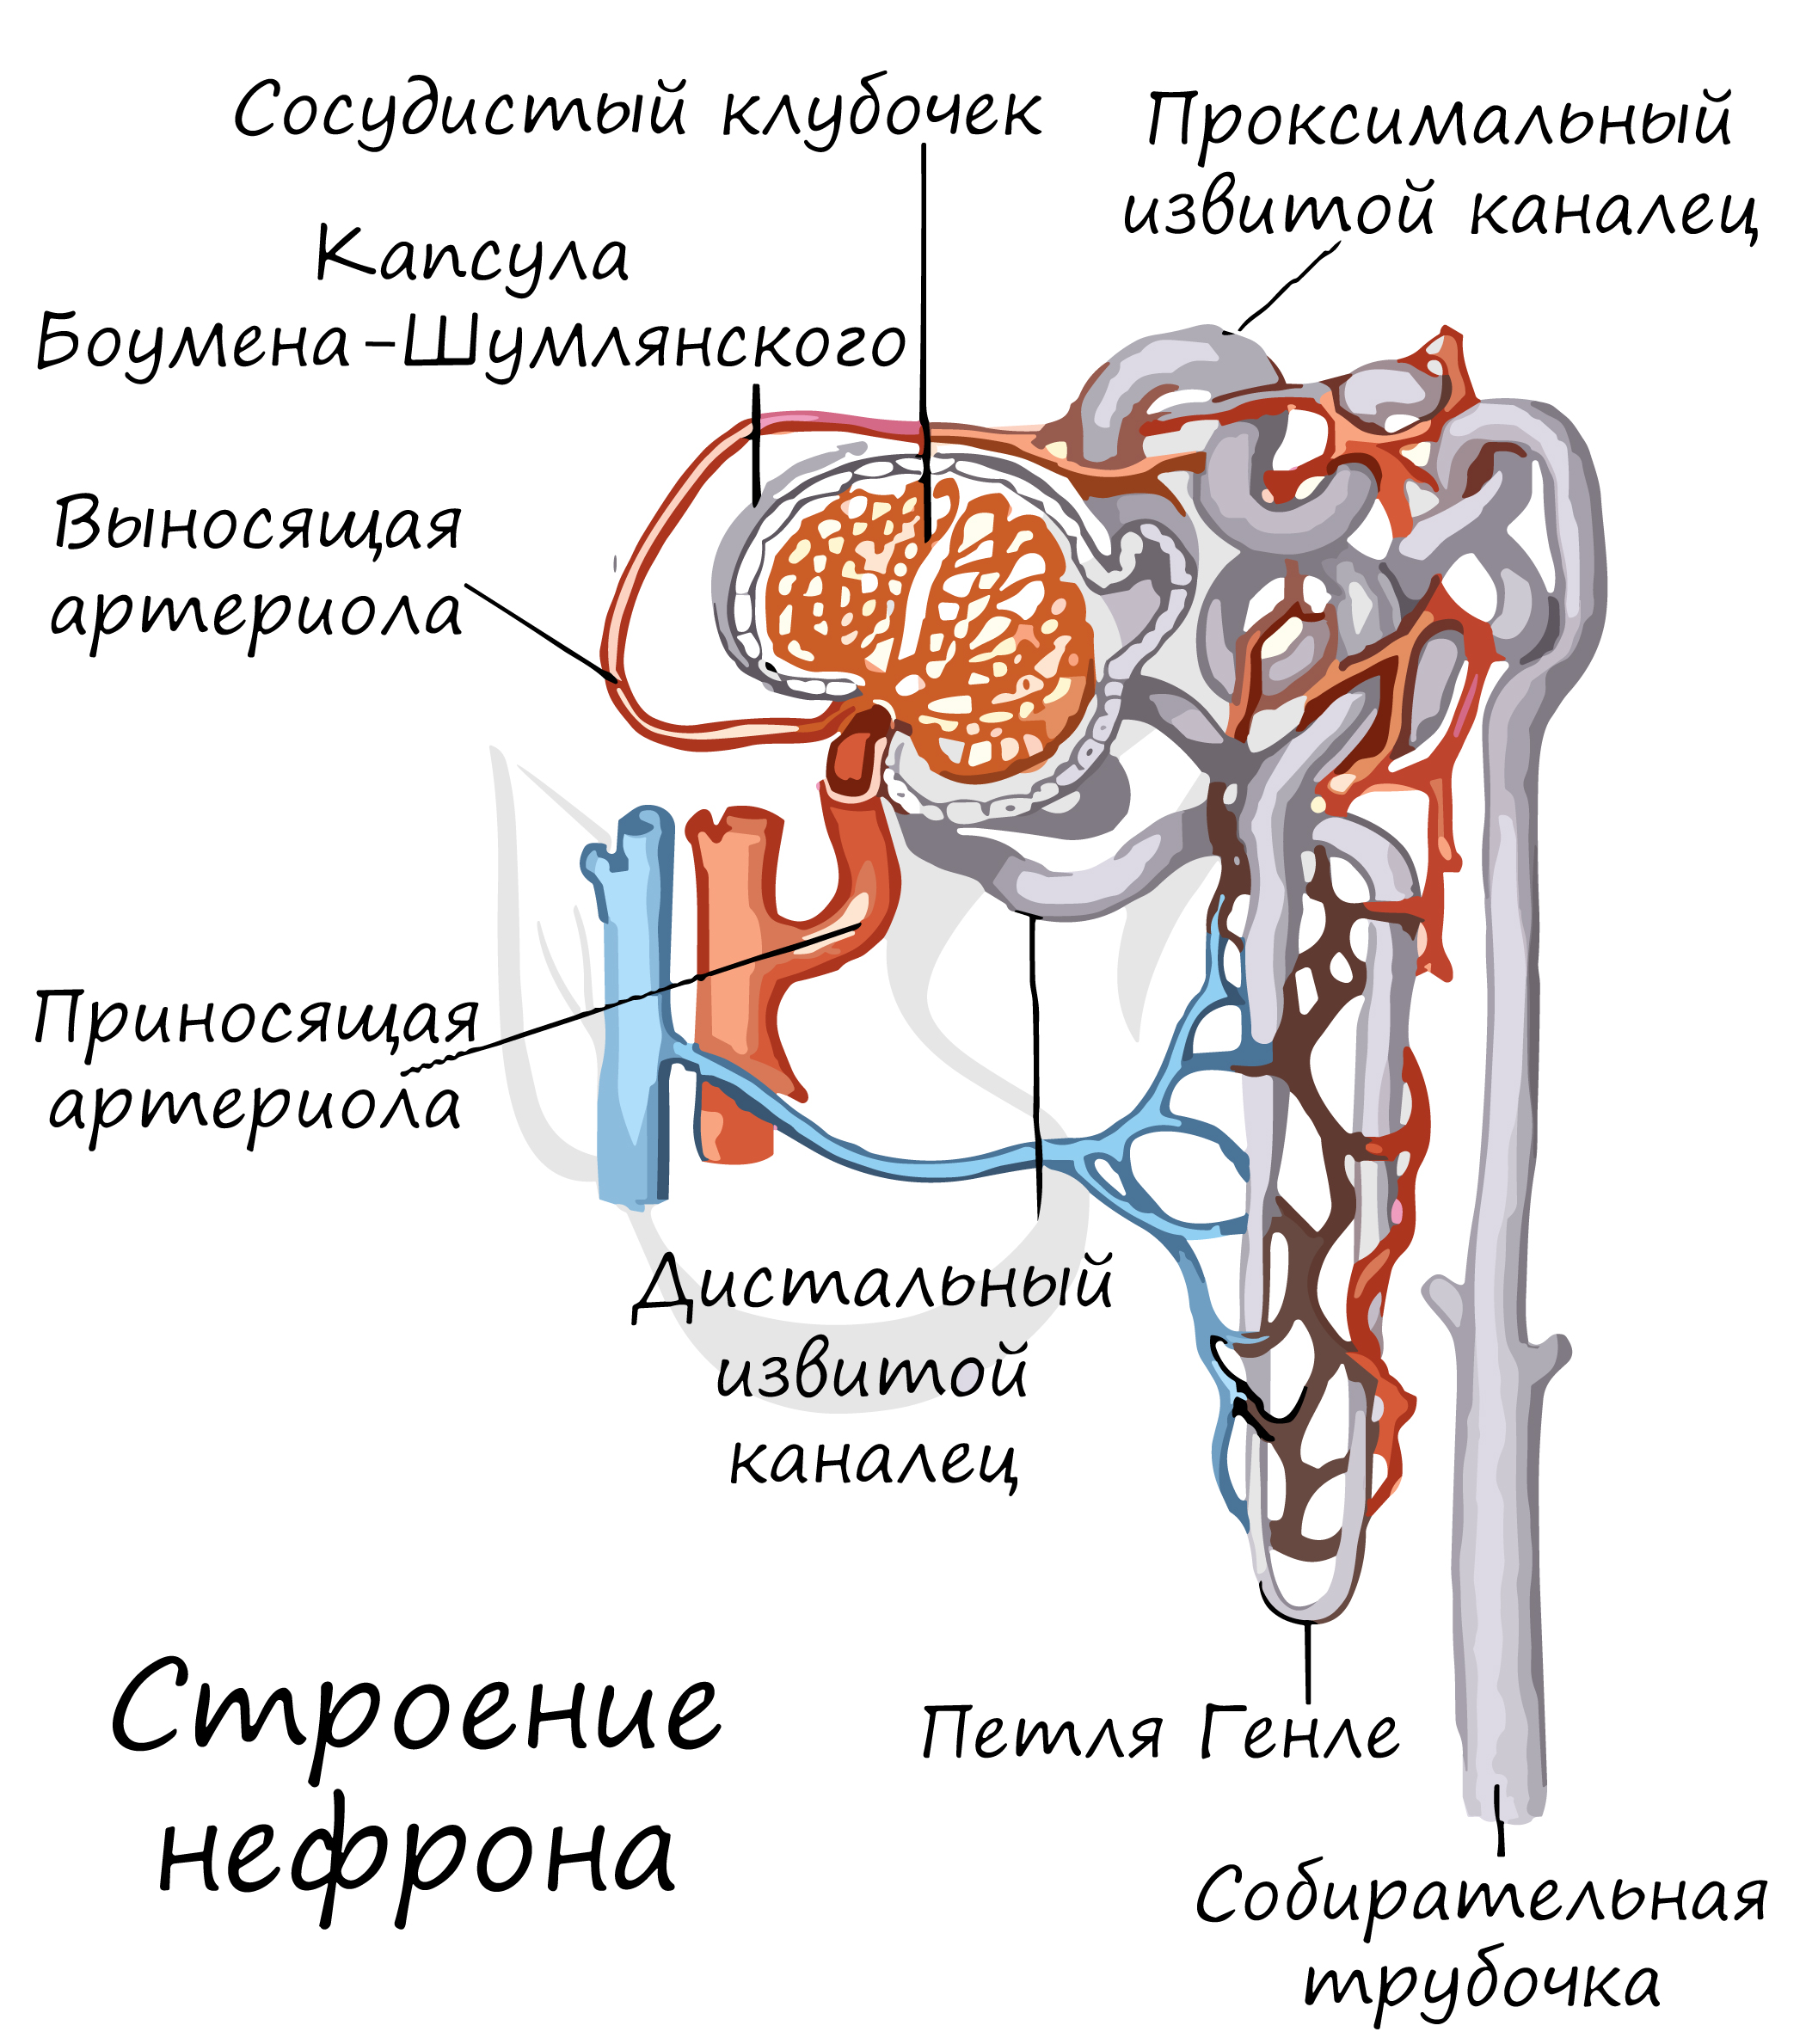 Моча которая образуется в капсуле нефрона. Выделительная система человека нефрон. Выносящая артериола нефрона. Мальпигиево тельце нефрона. Мочевыделительная система нефрон.